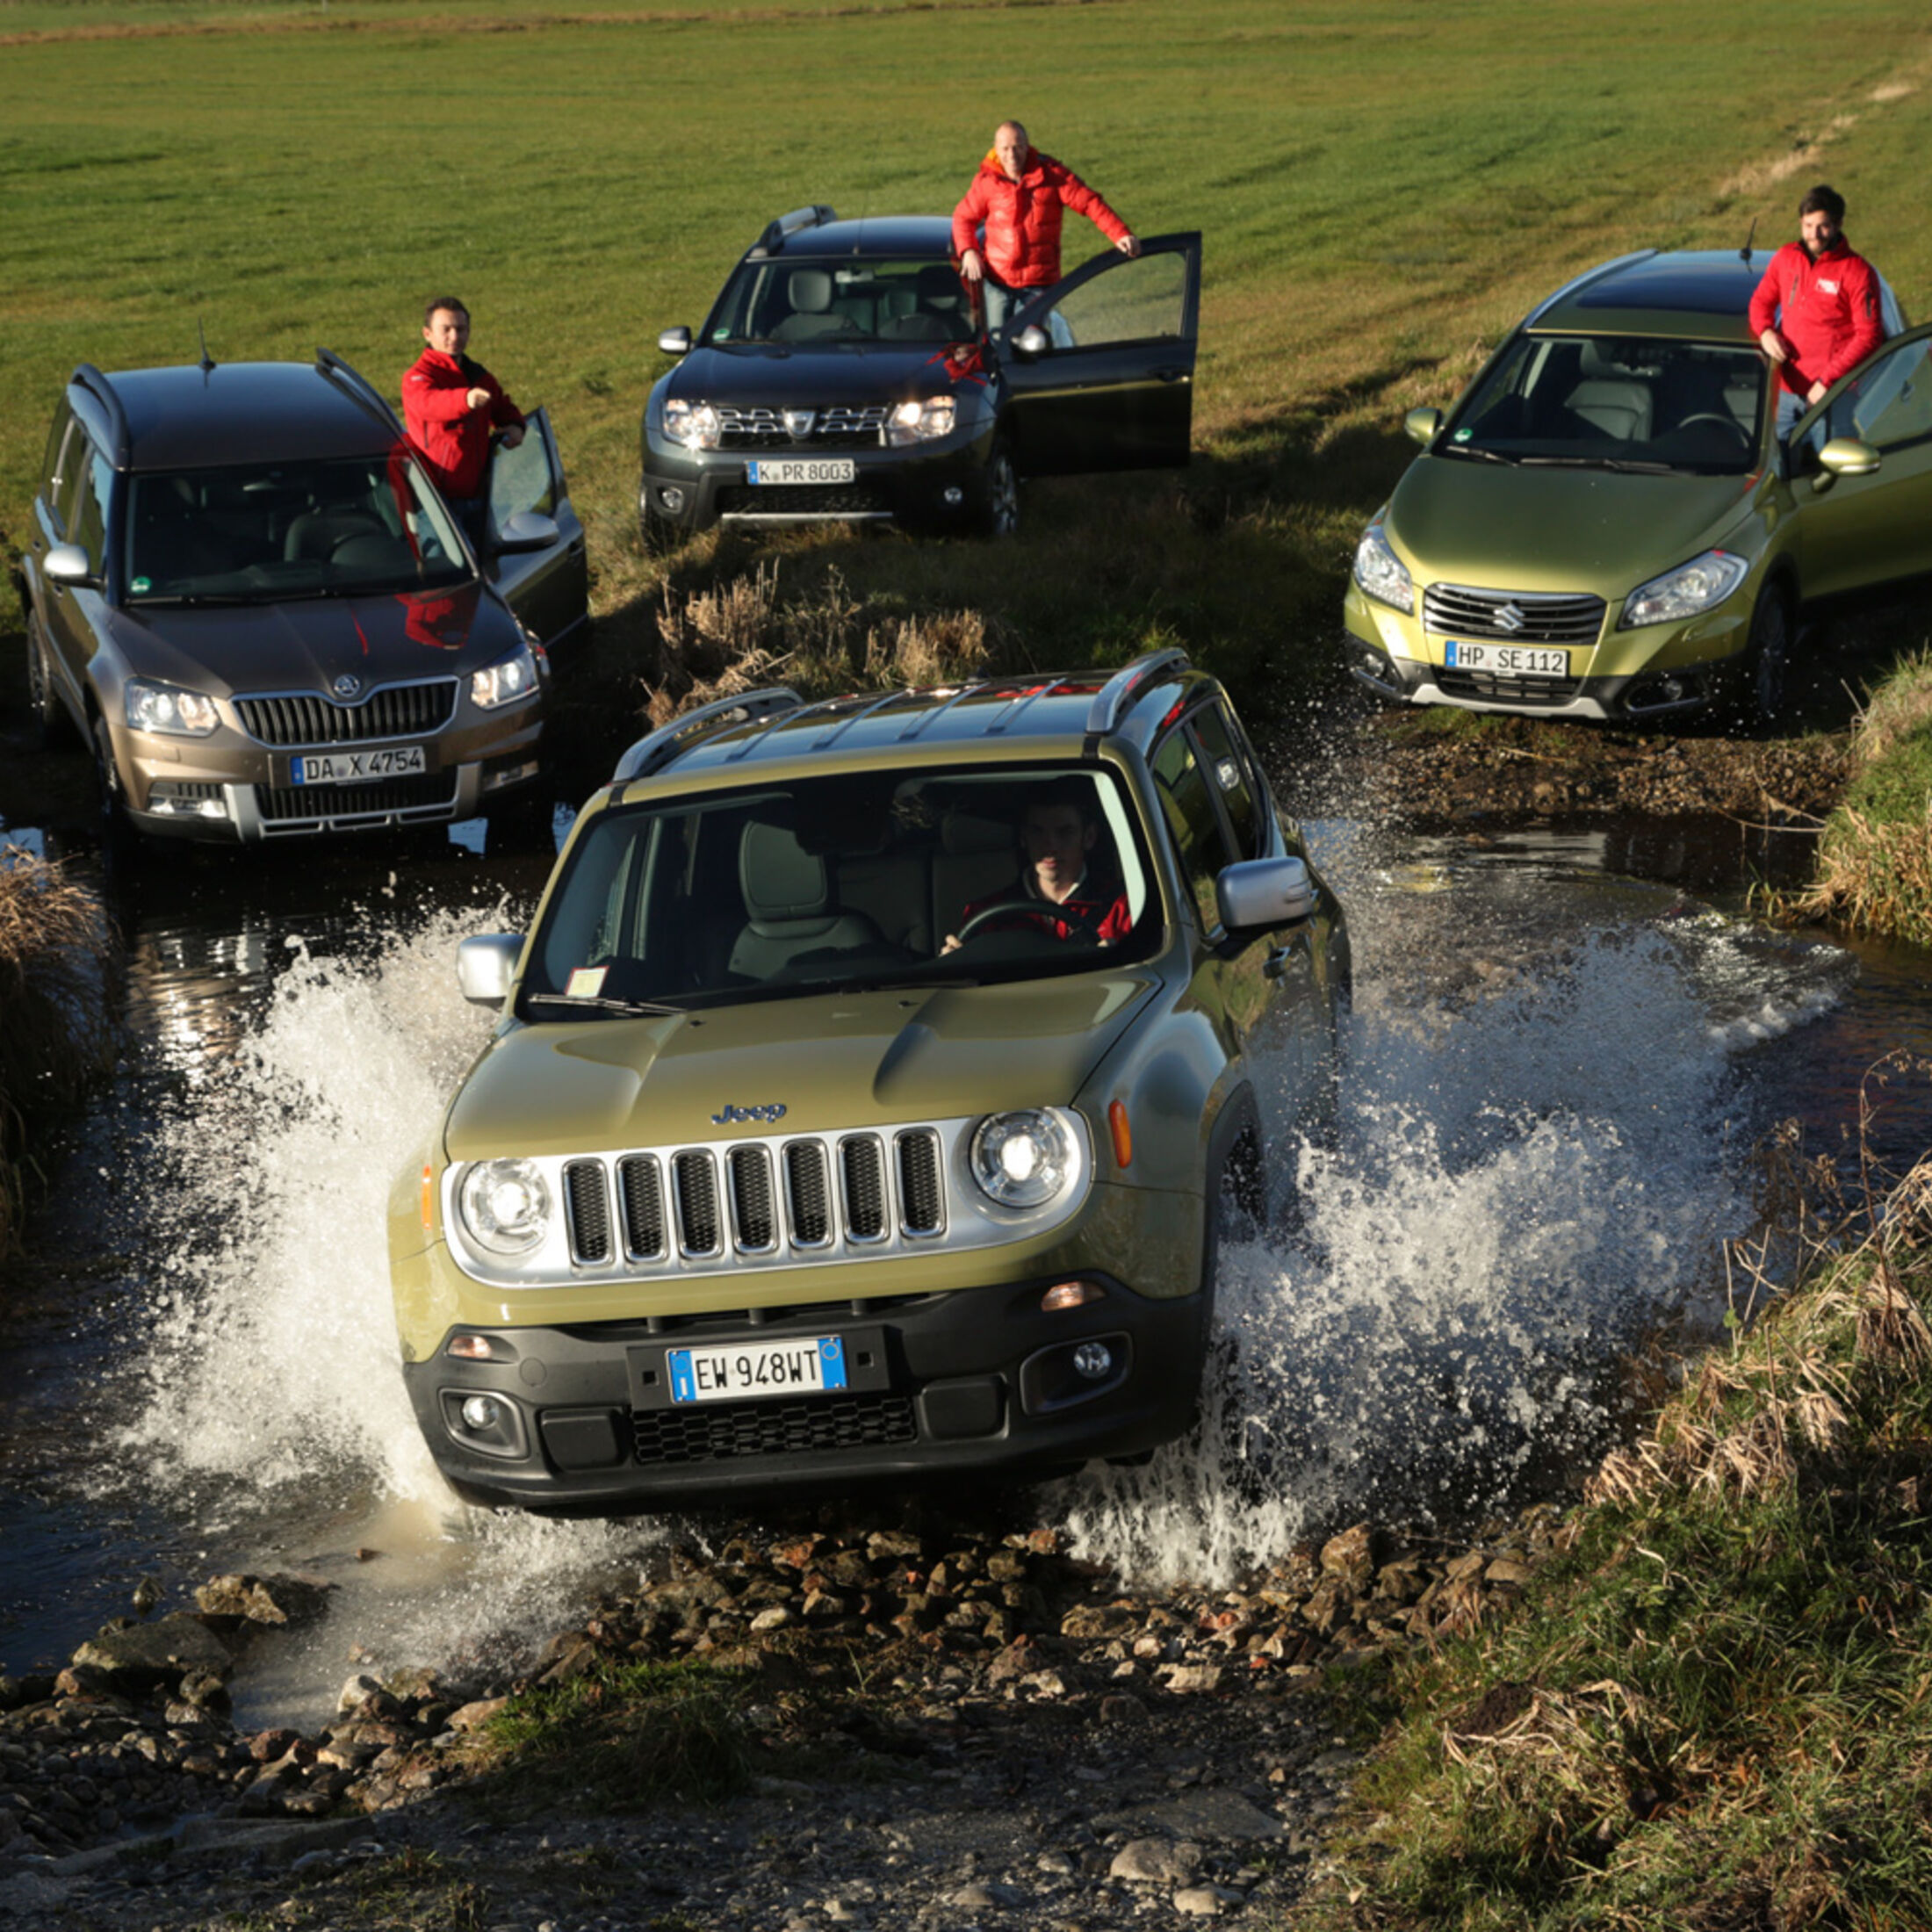 Jeep Renegade, Duster, Yeti, SX4 S-Cross: Jeep genug für die Konkurrenz